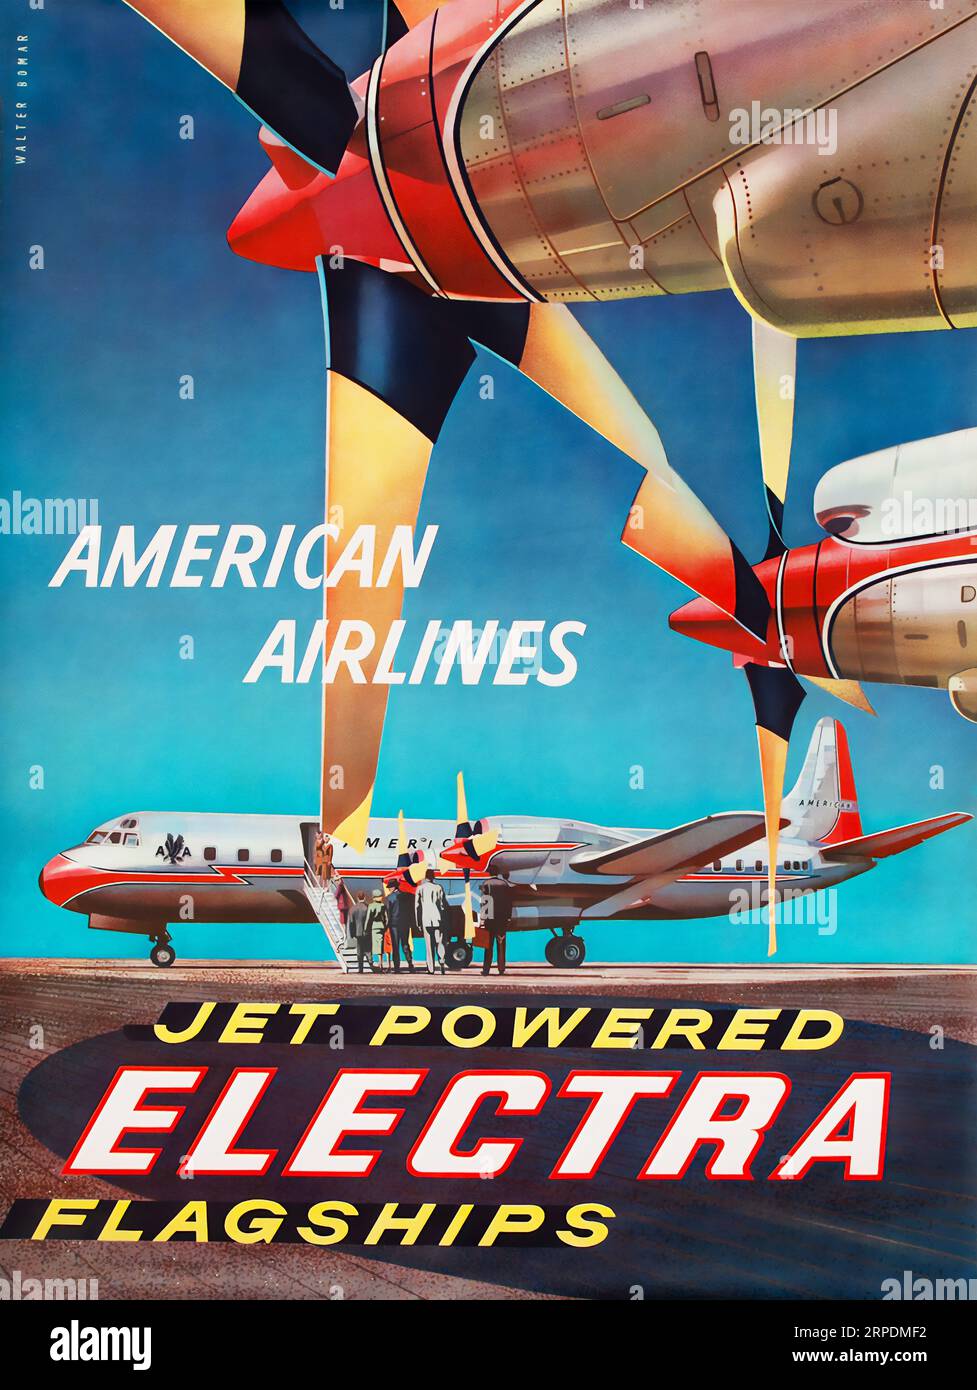 Affiche de voyage d'American Airlines Jet Powered Electra des années 1950 Walter Bomar Banque D'Images